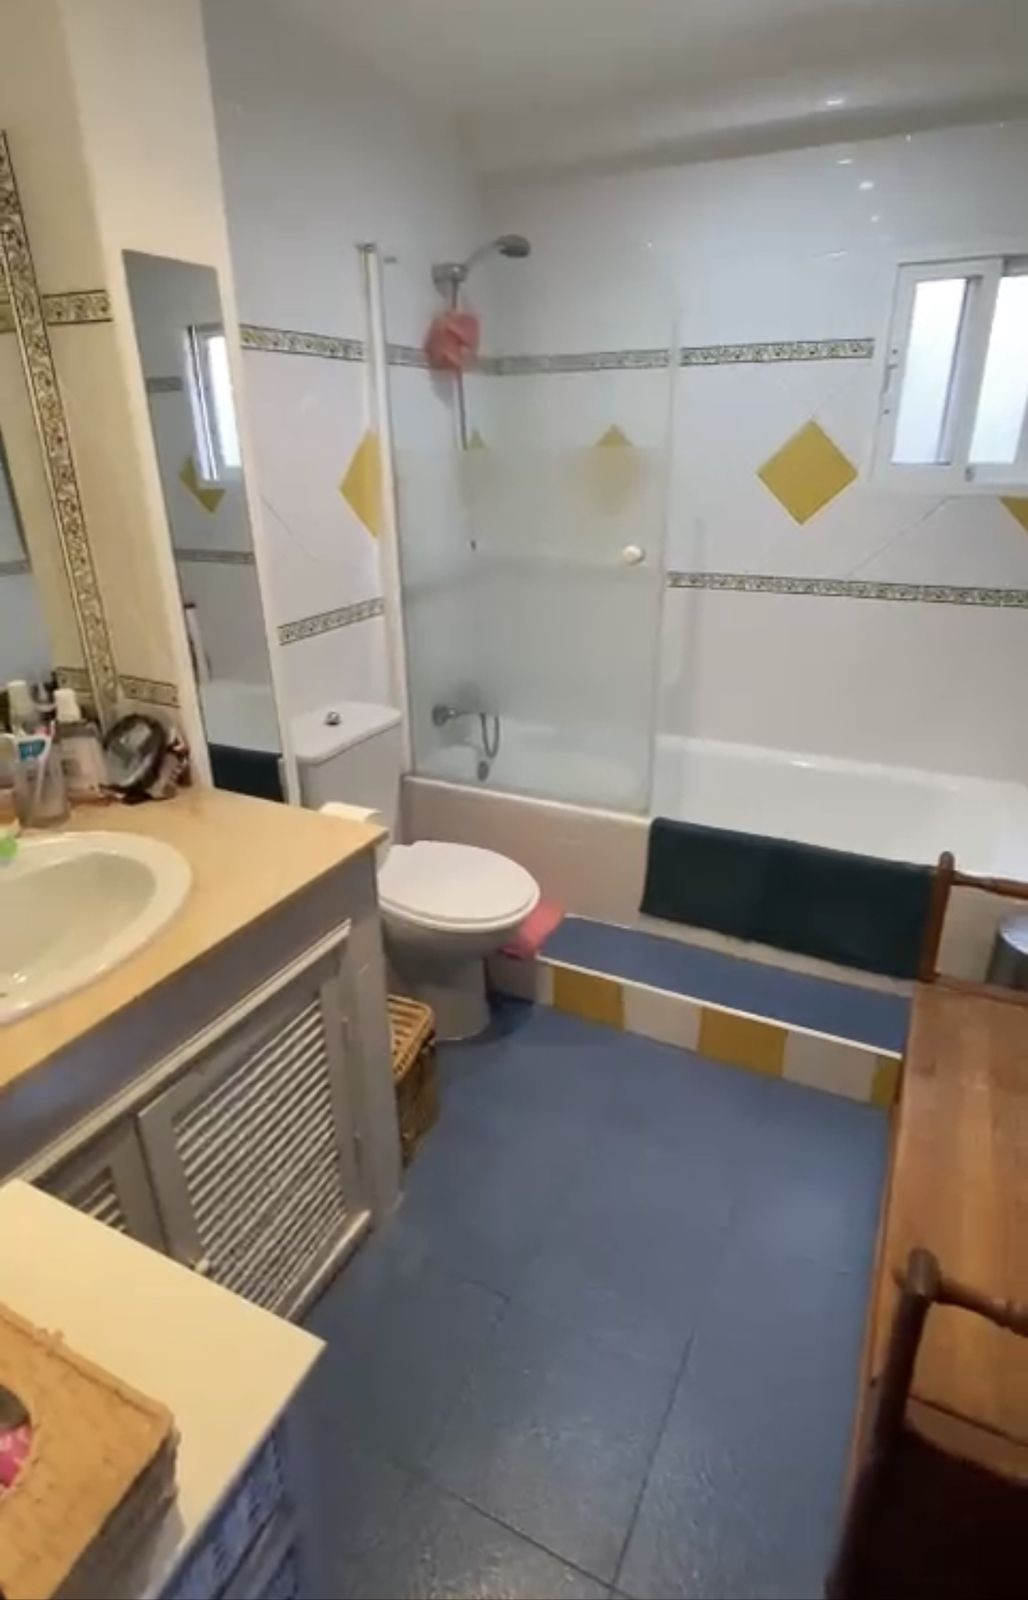 3 Bedrooms - 2 Bathrooms